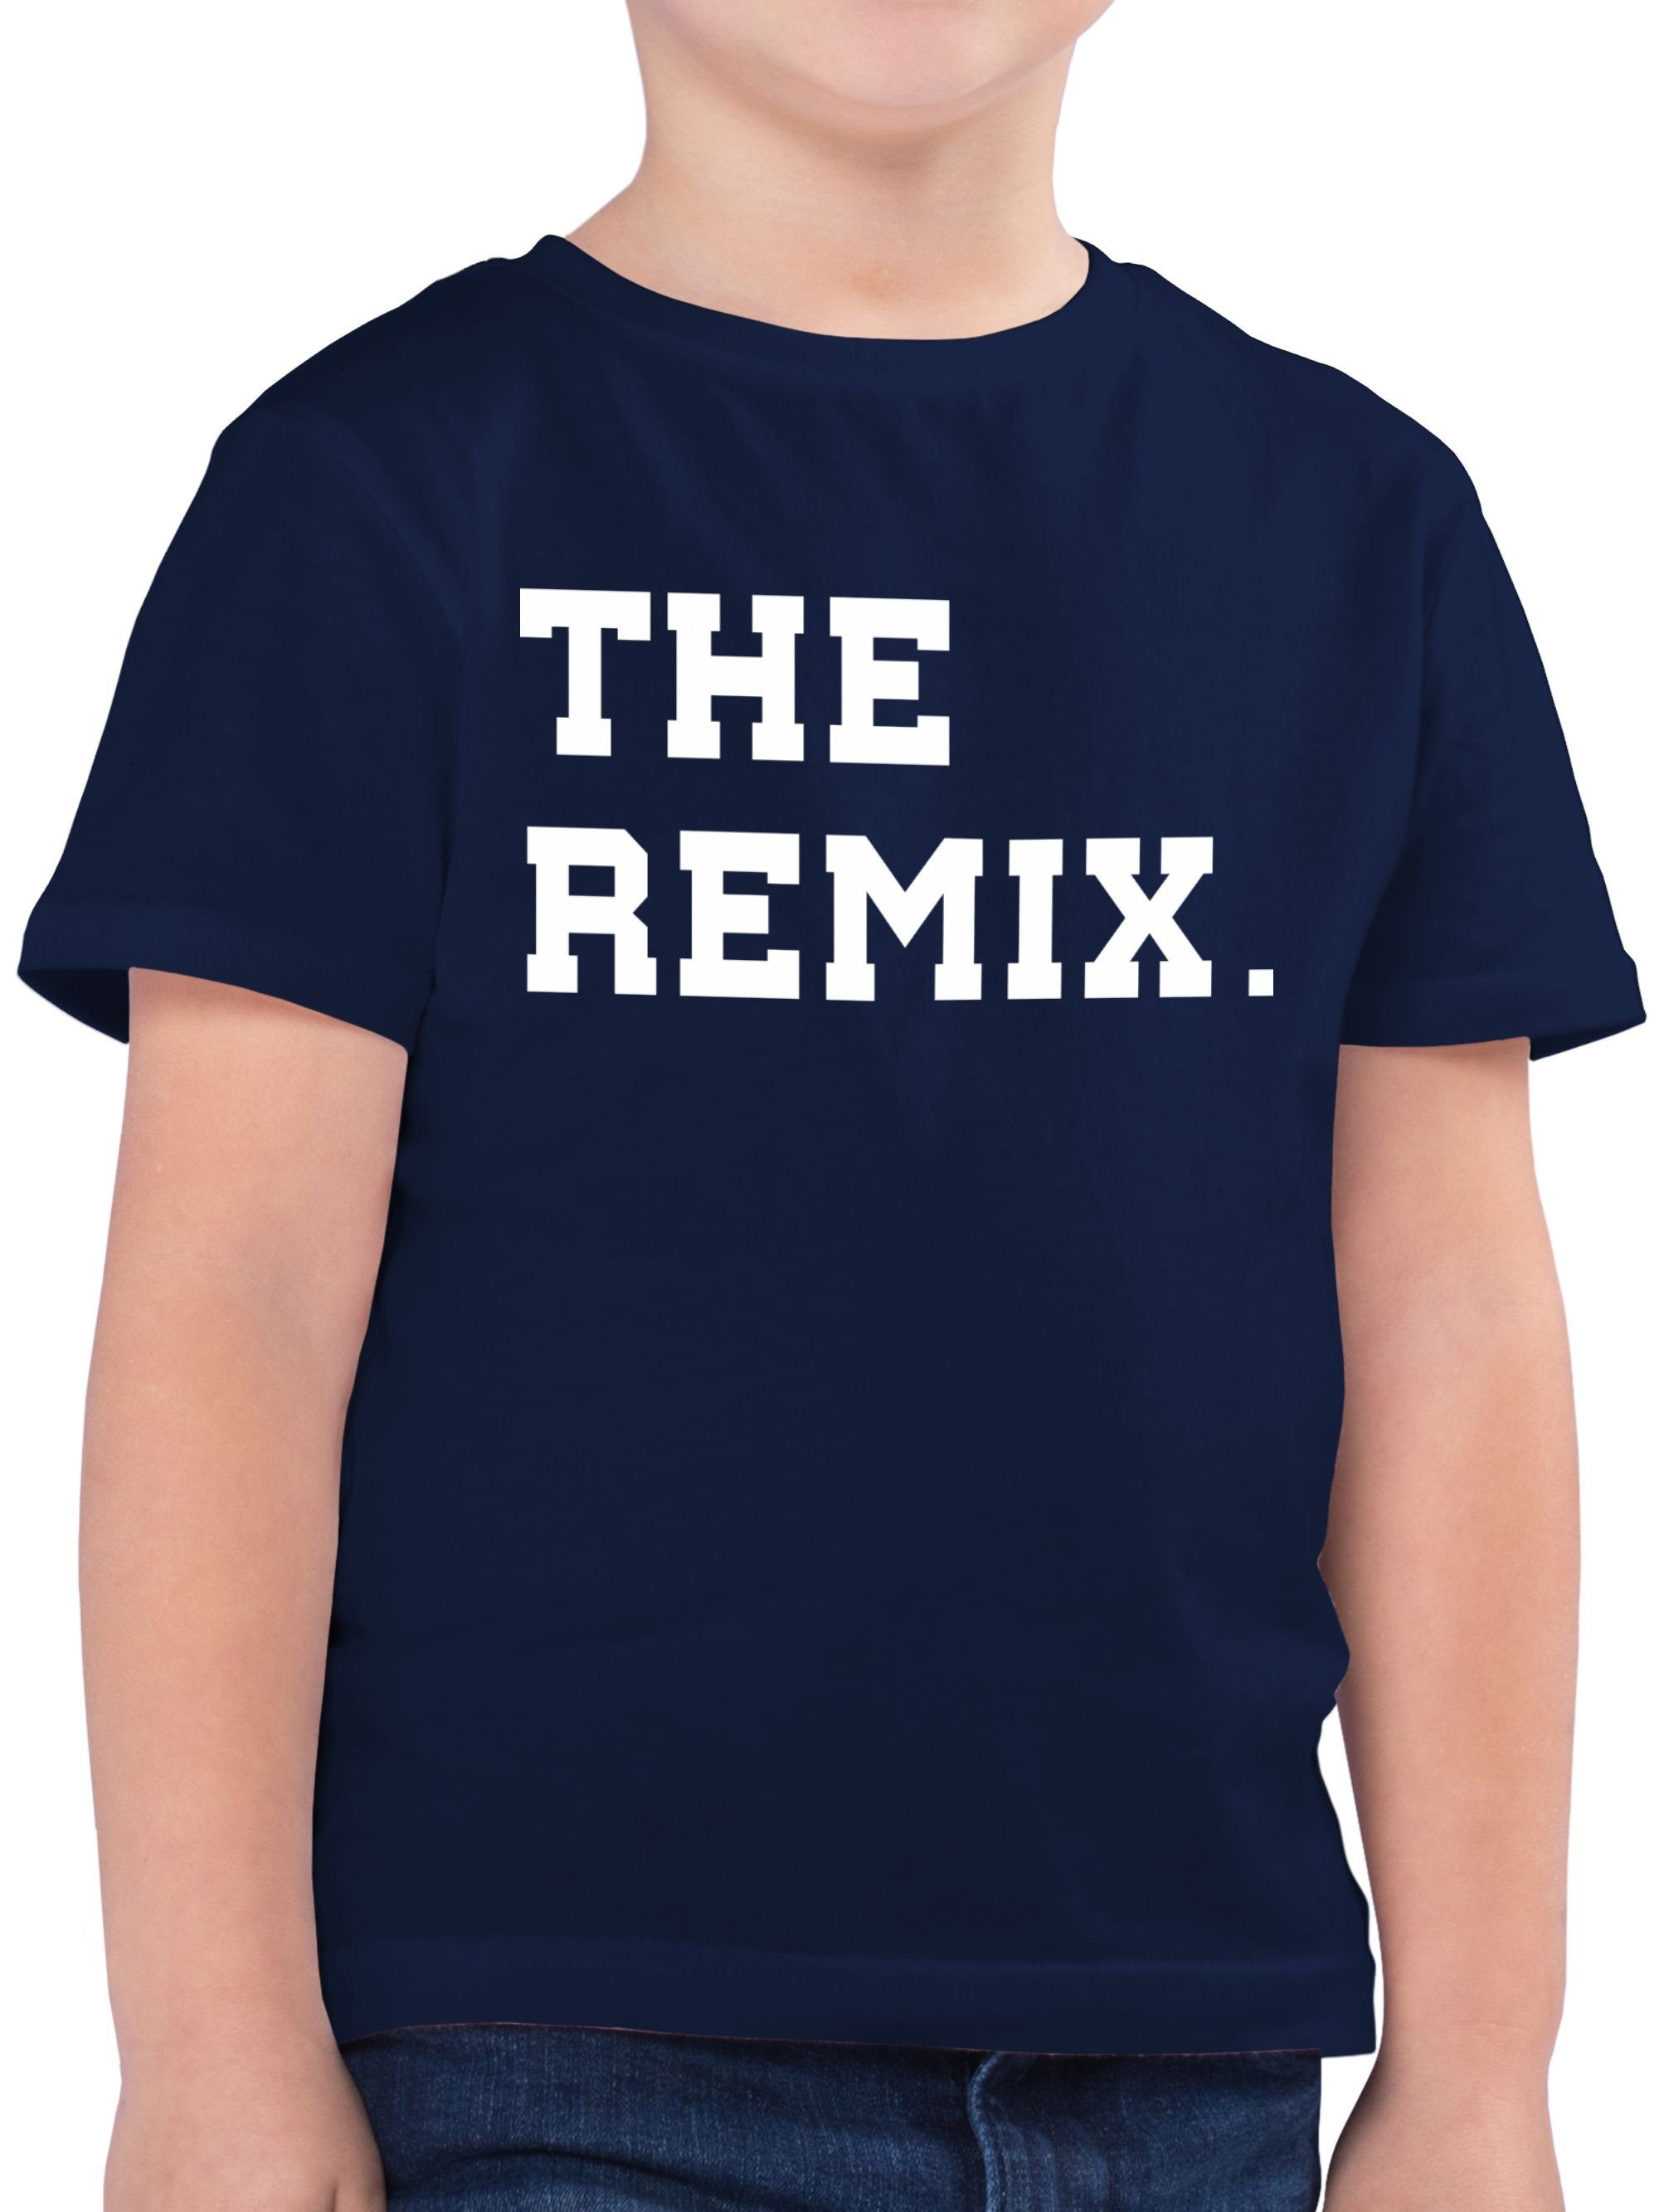 Shirtracer T-Shirt The Original The 2 Kind Dunkelblau Familie Kind Partner-Look Remix